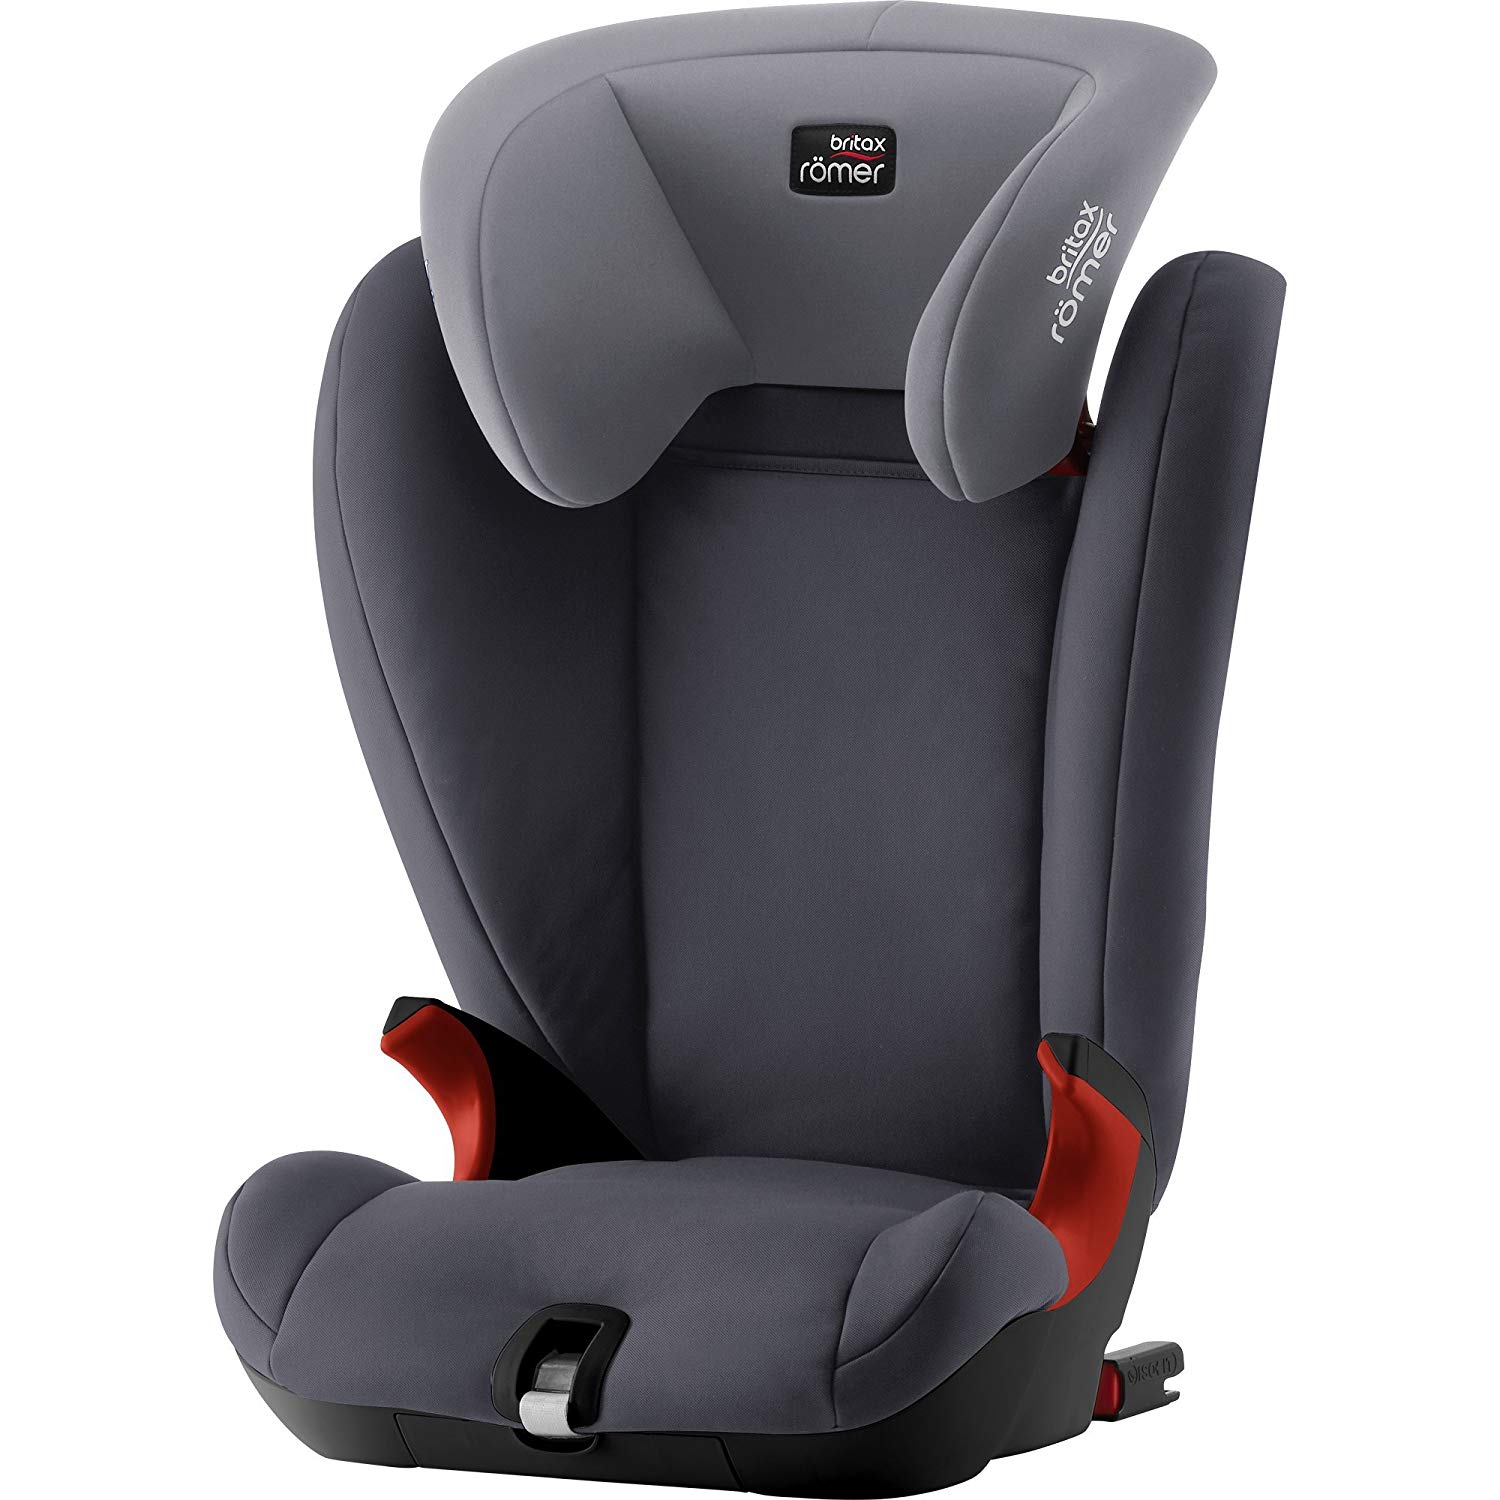 Britax Romer Britax Römer Kidfix SL SICT Child Car Seat Group 2/3, 15 - 36 kg. without SICT